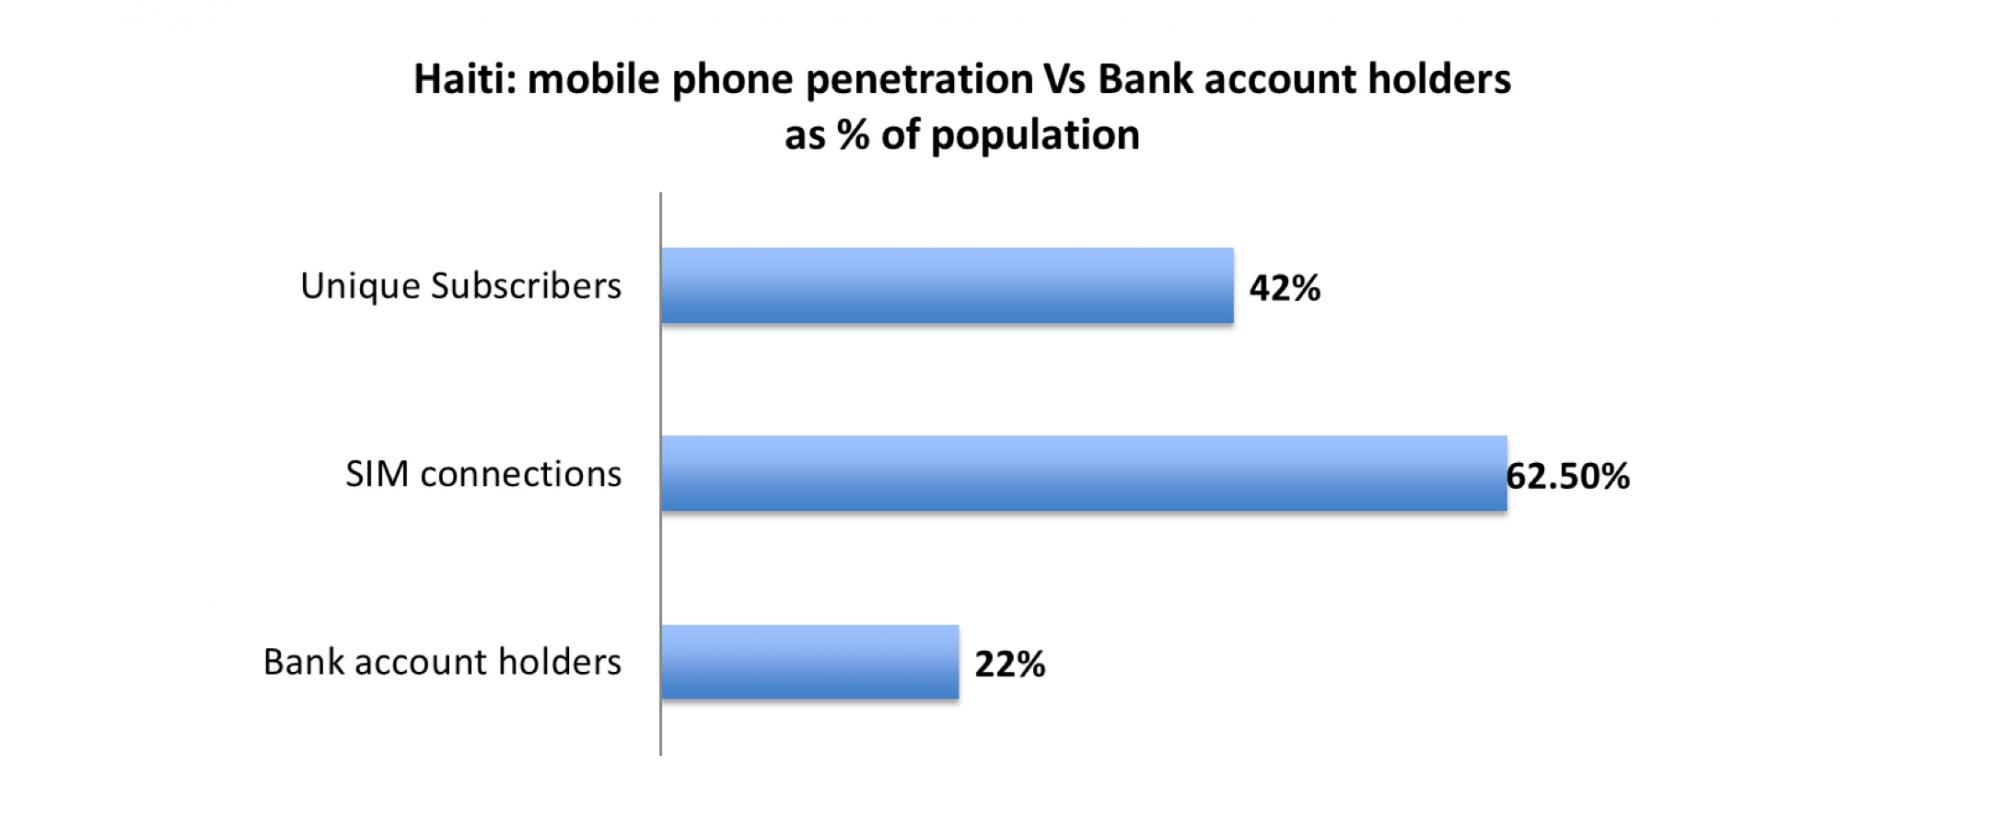 mobile phone penetration vs bang account in haiti